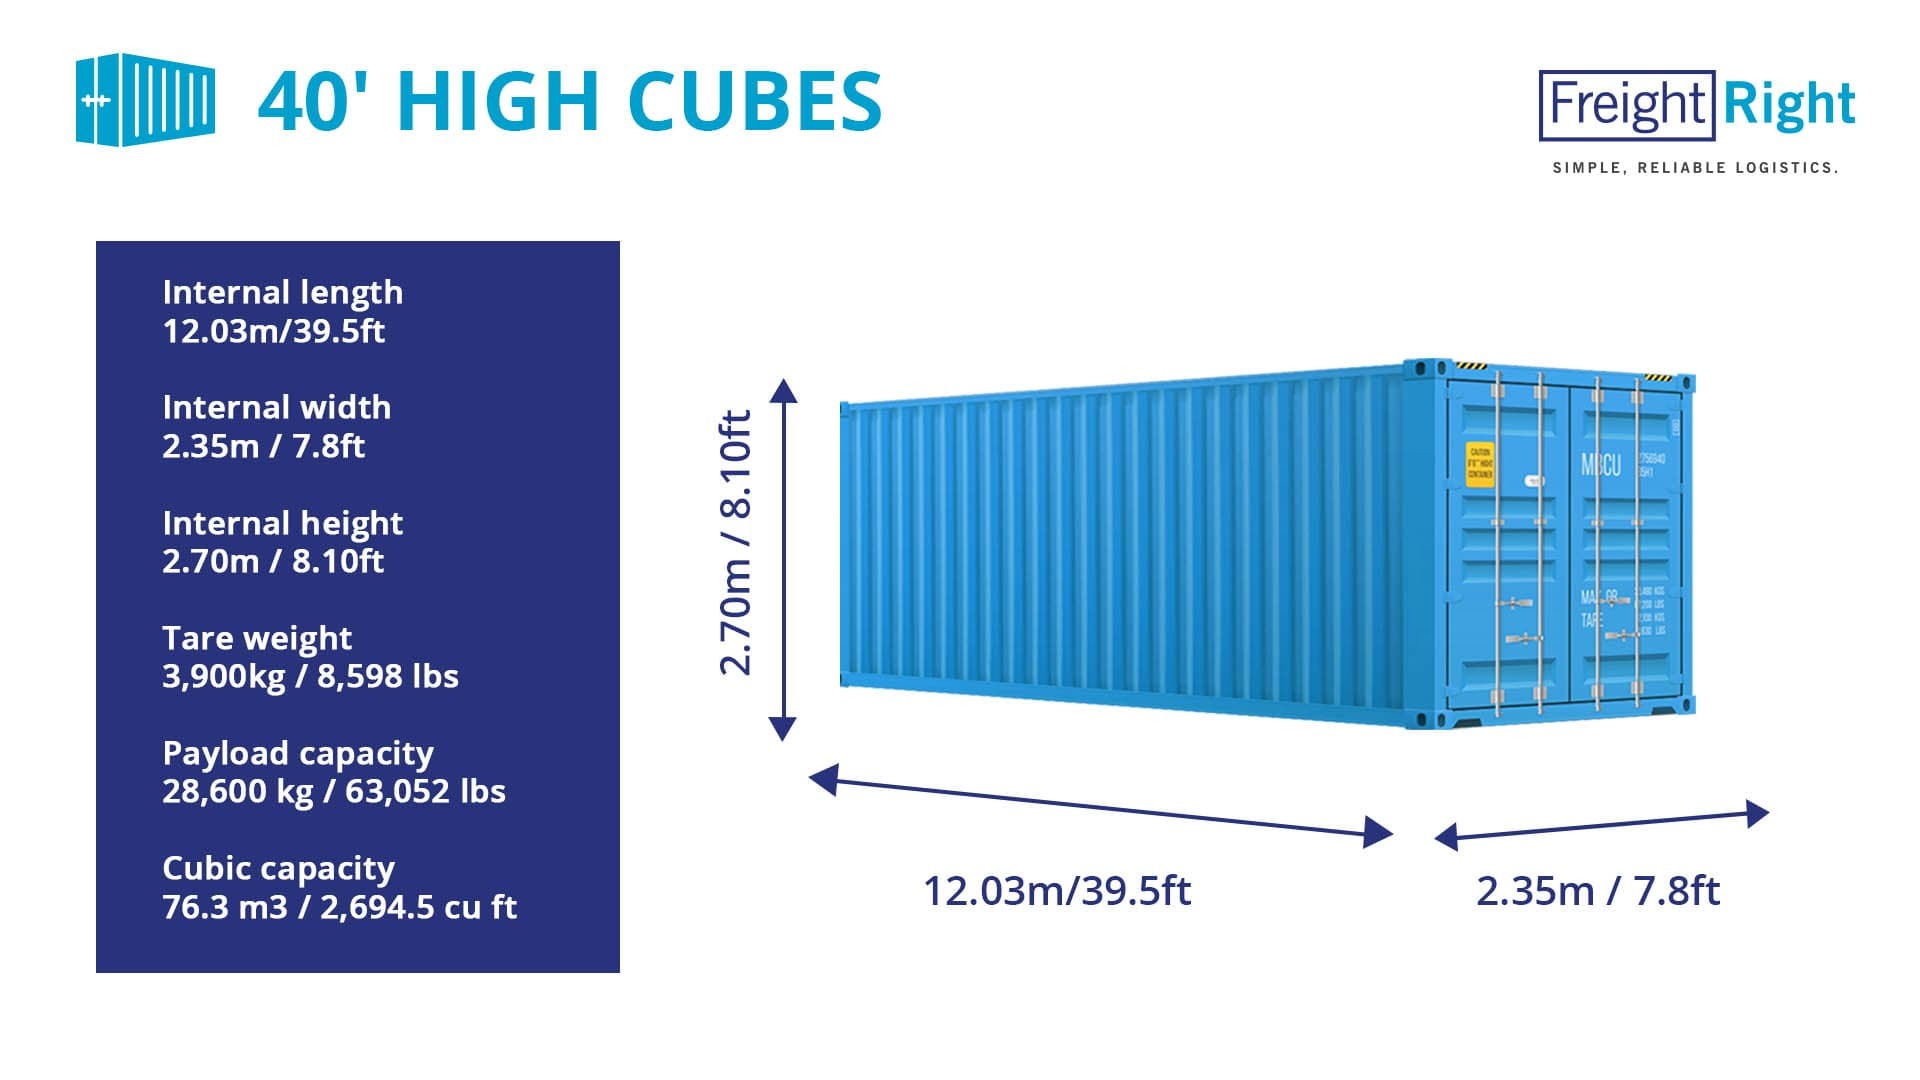 Контейнер high cube 40. Контейнер 40 HC/hq (High Cube). Контейнер 40 фут Хай Кьюб размер. Габариты 40 фут контейнера High Cube. Размеры морского контейнера 40 футов High Cube.